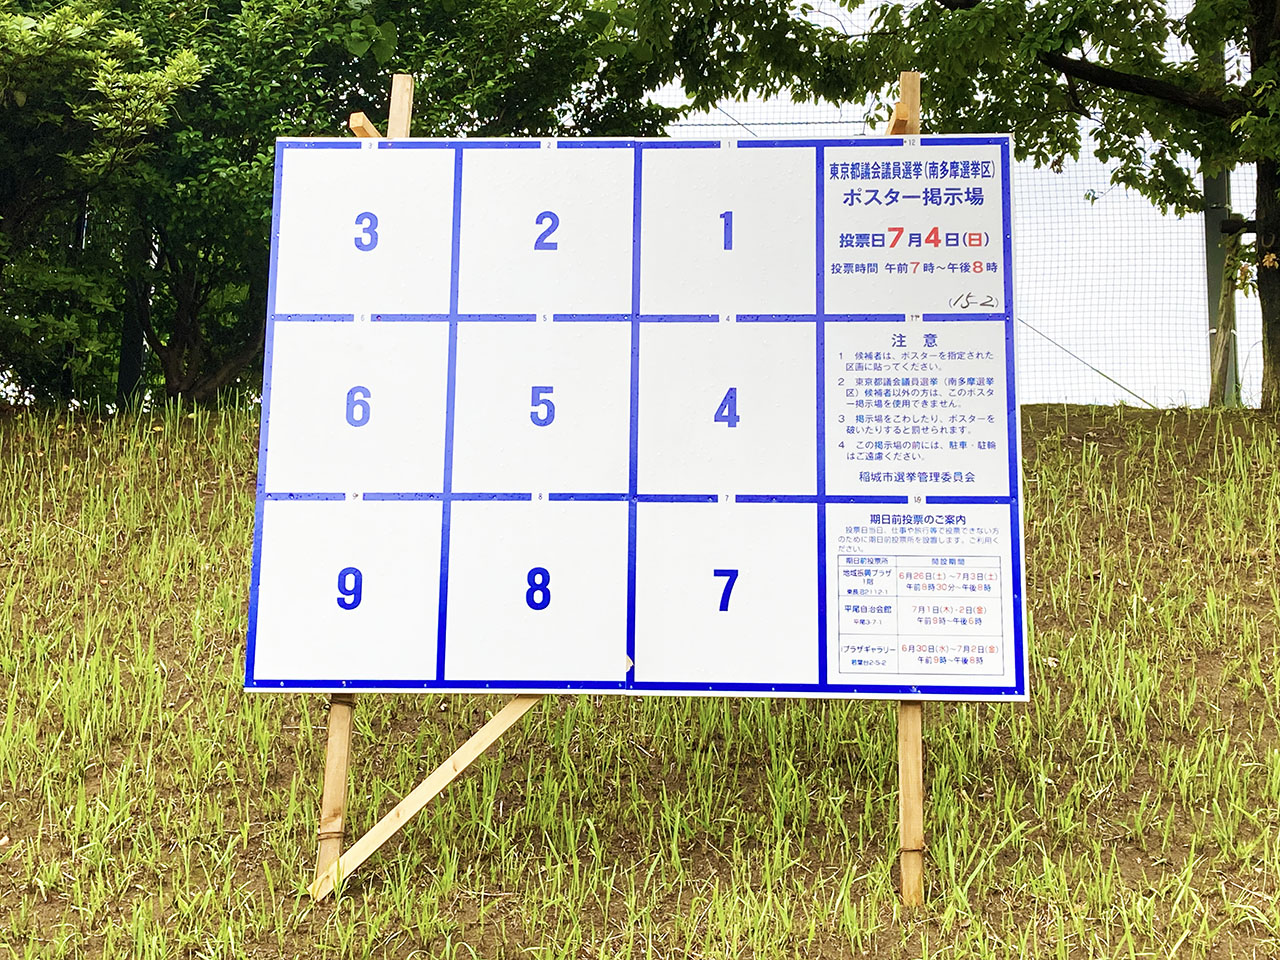 投票日は7月4日・東京都都議会選挙の告示がされました